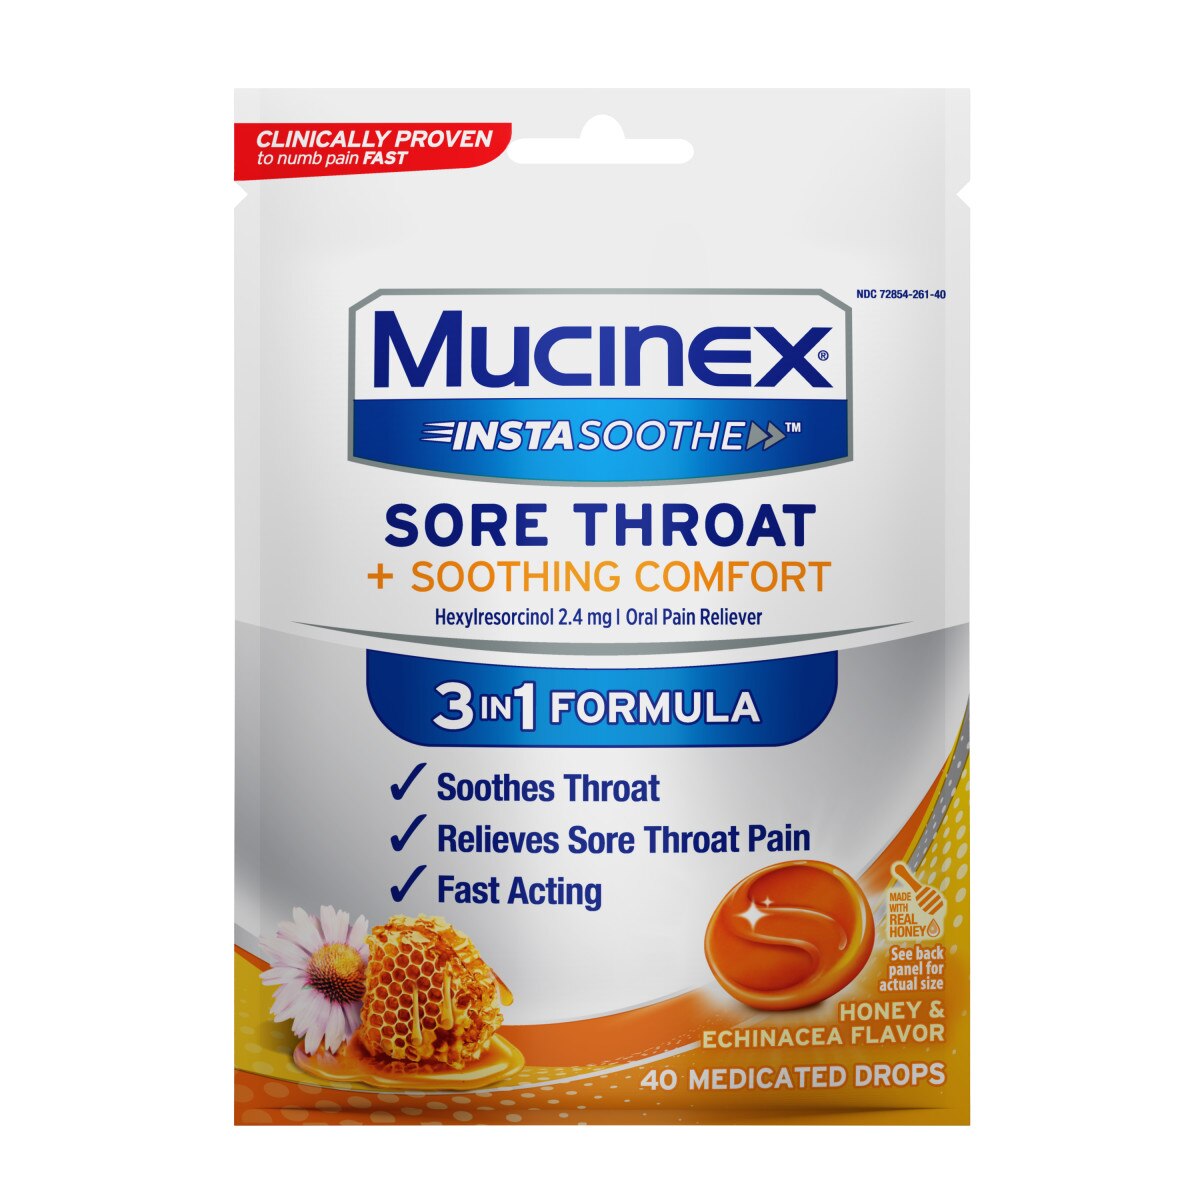 MUCINEX InstaSoothe Sore Throat + Soothing Comfort - Honey & Echinacea, 40 ct